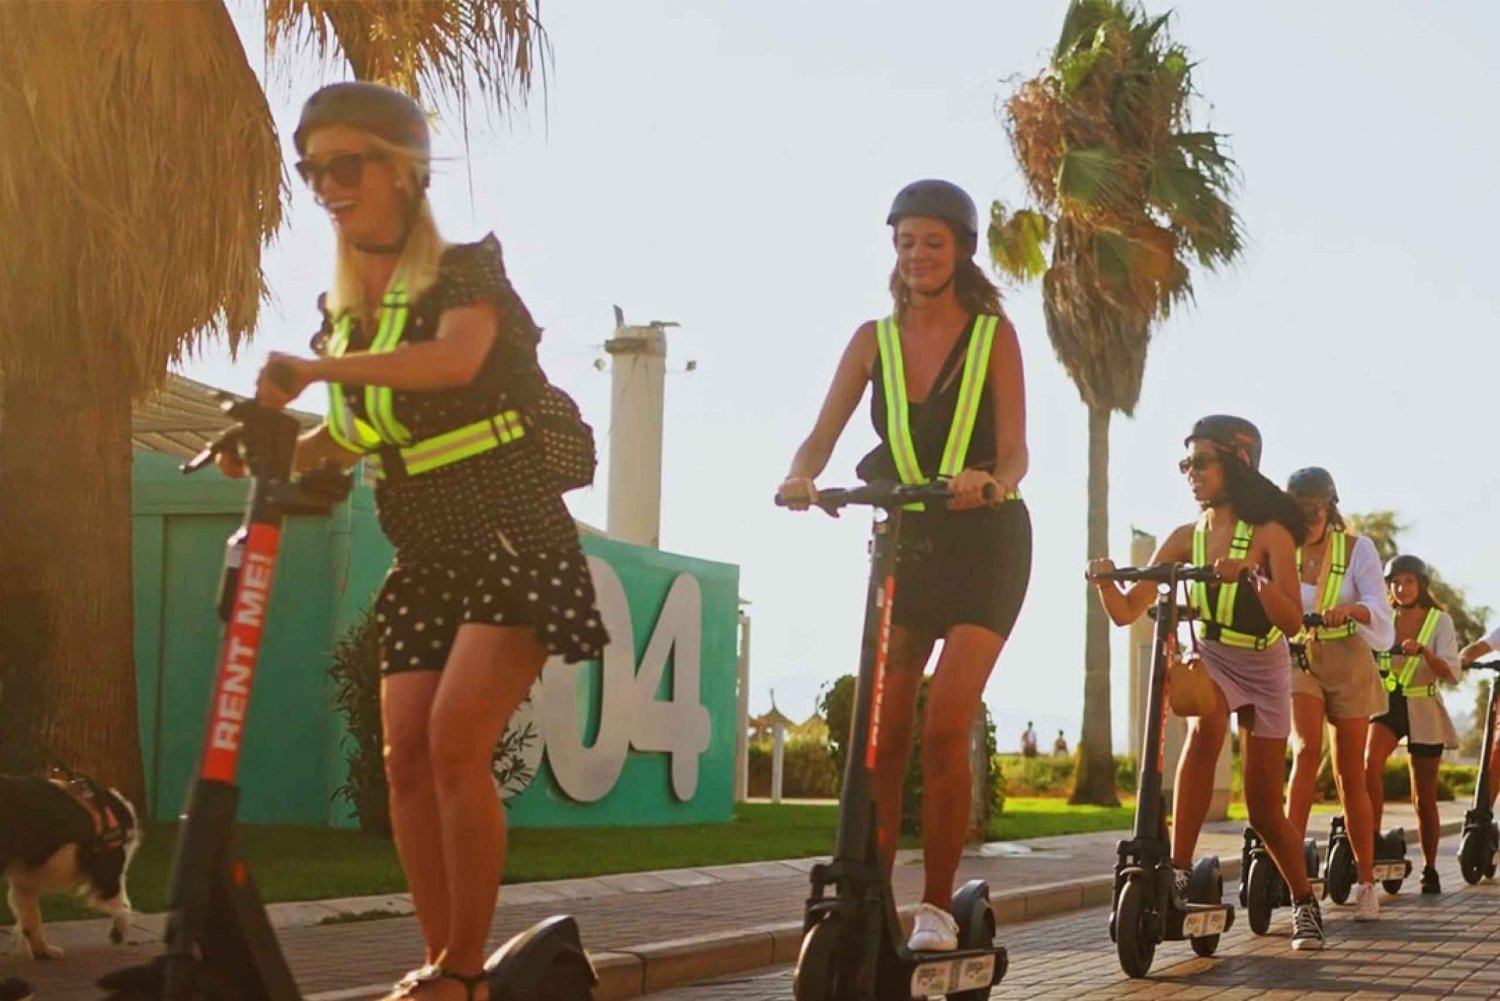 Playa de Palma : location de scooters électriques et de casques